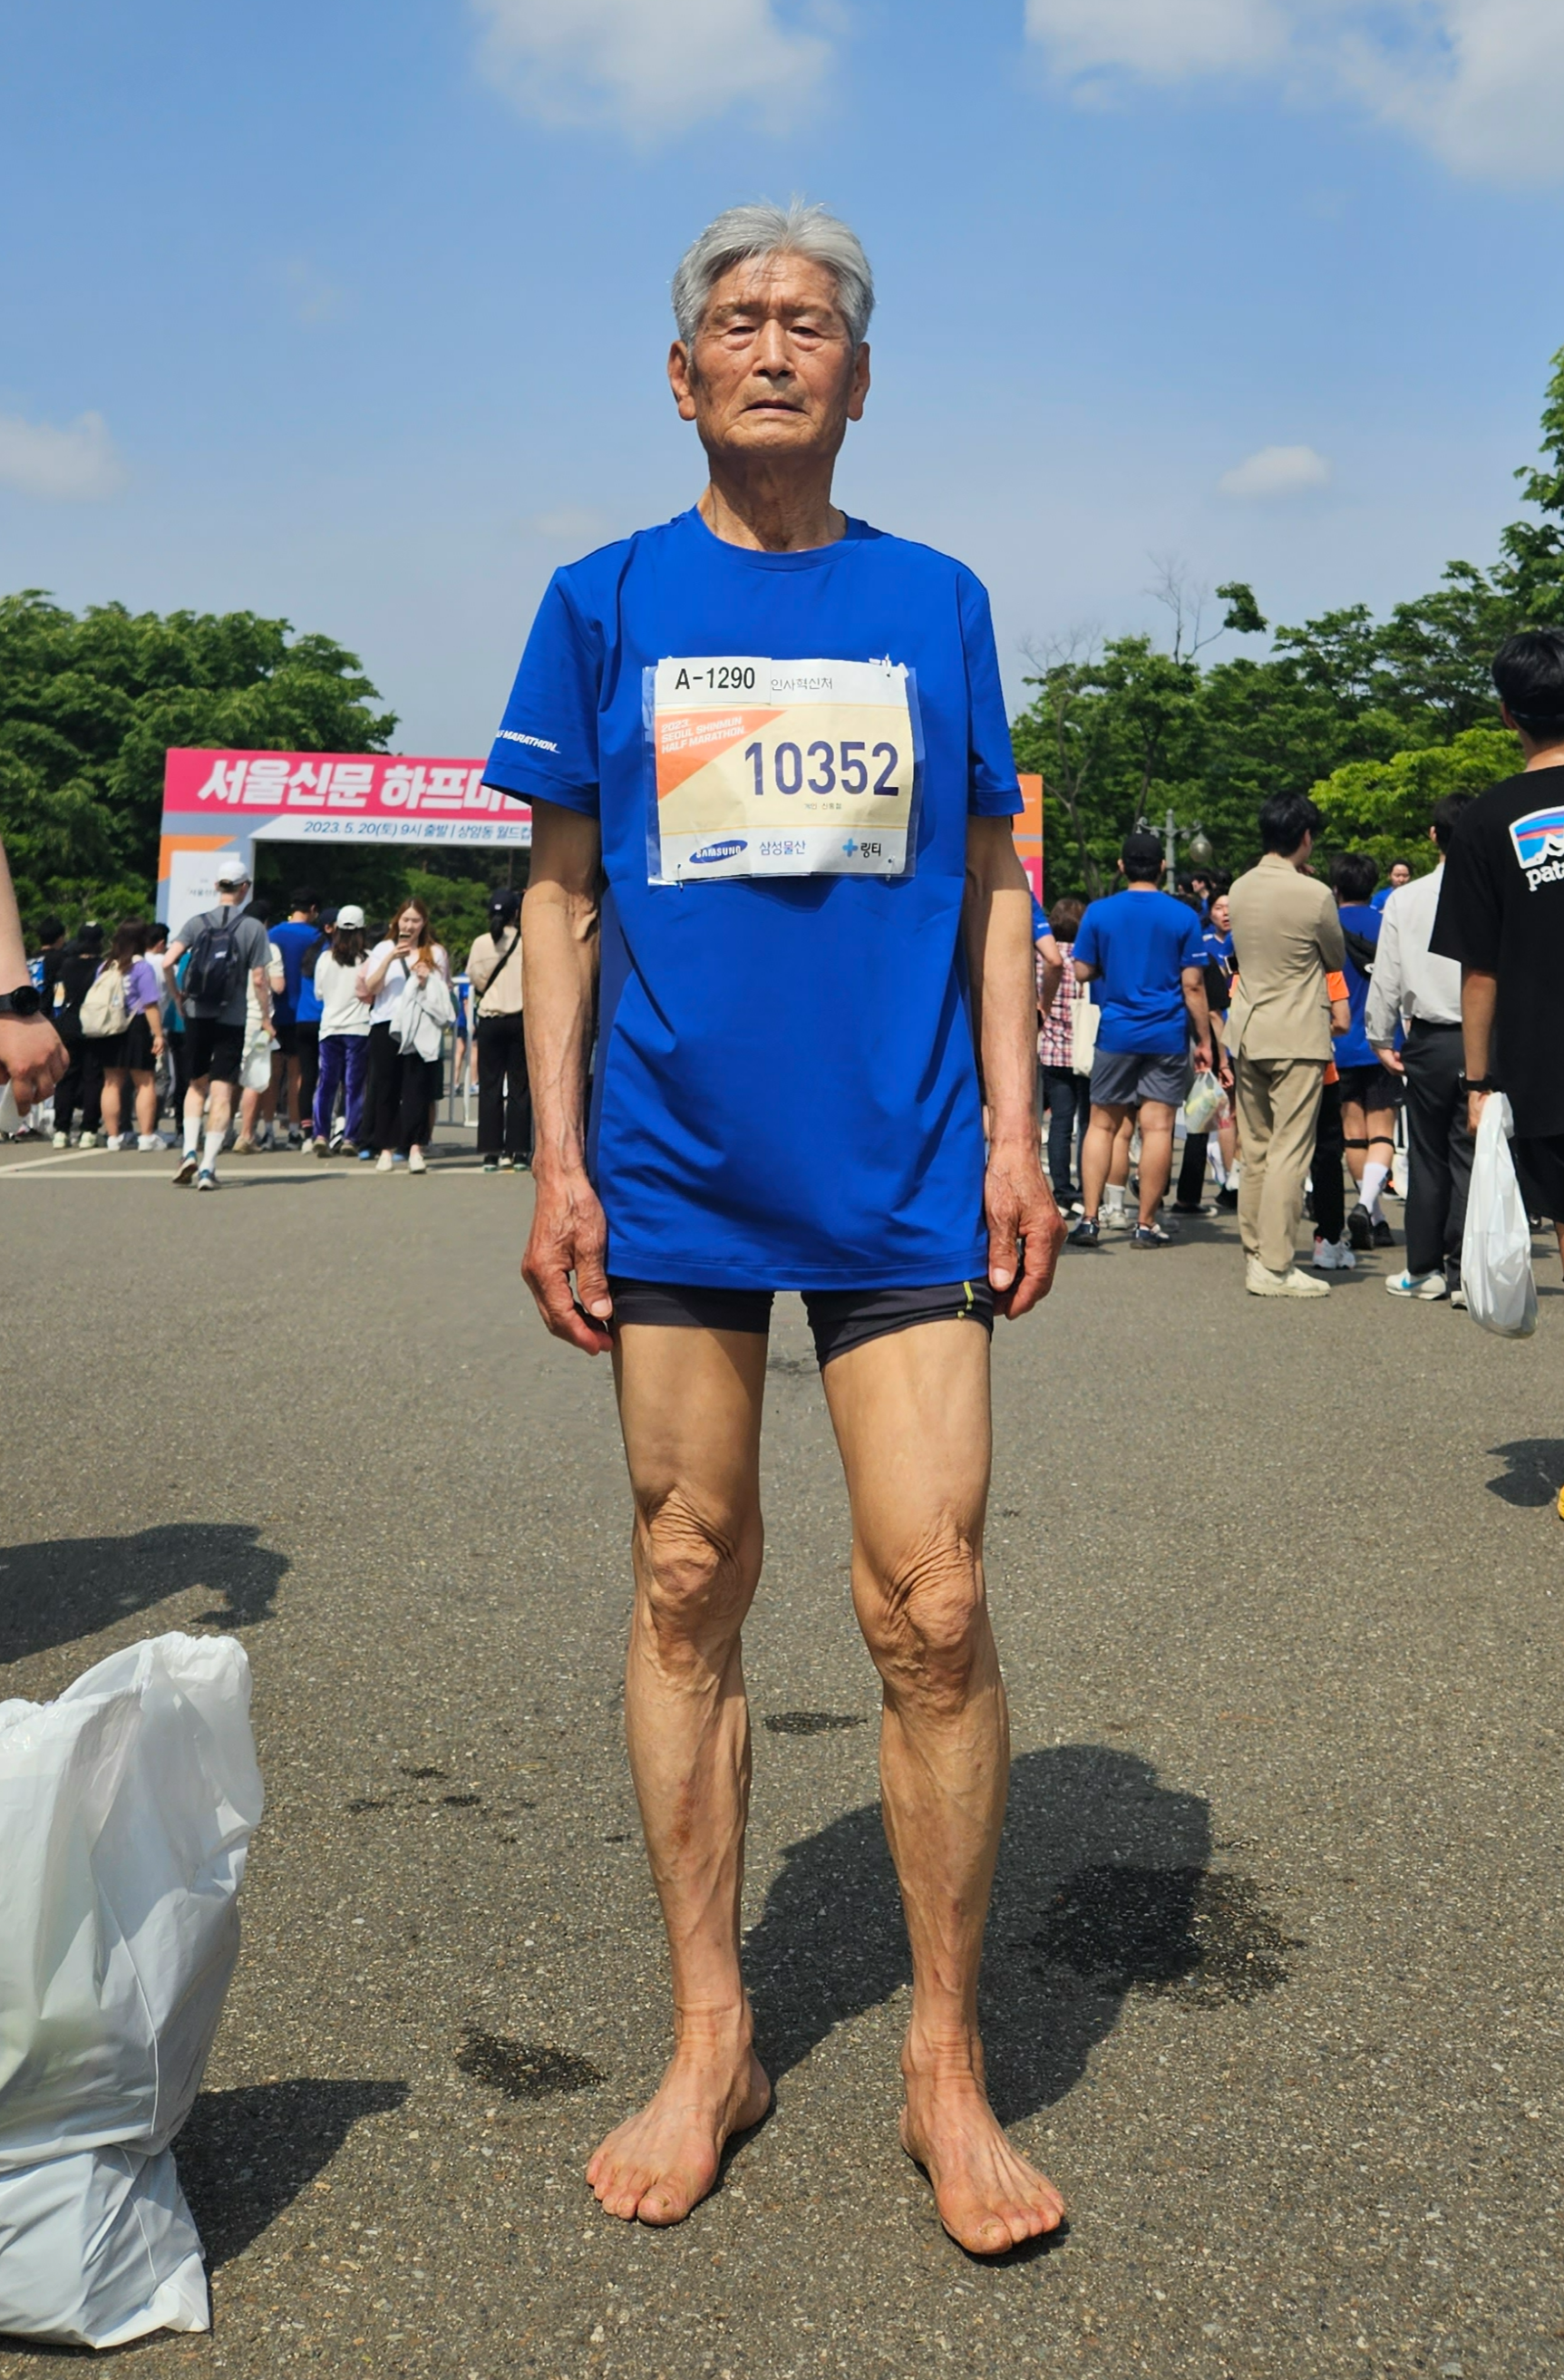 마라톤 대회의 전체 참가자 중 최고령자인 87세 신홍철씨가 20일 5㎞ 코스를 맨발로 완주한 뒤 자랑스럽게 두 발을 내보이고 있다. 곽소영 기자